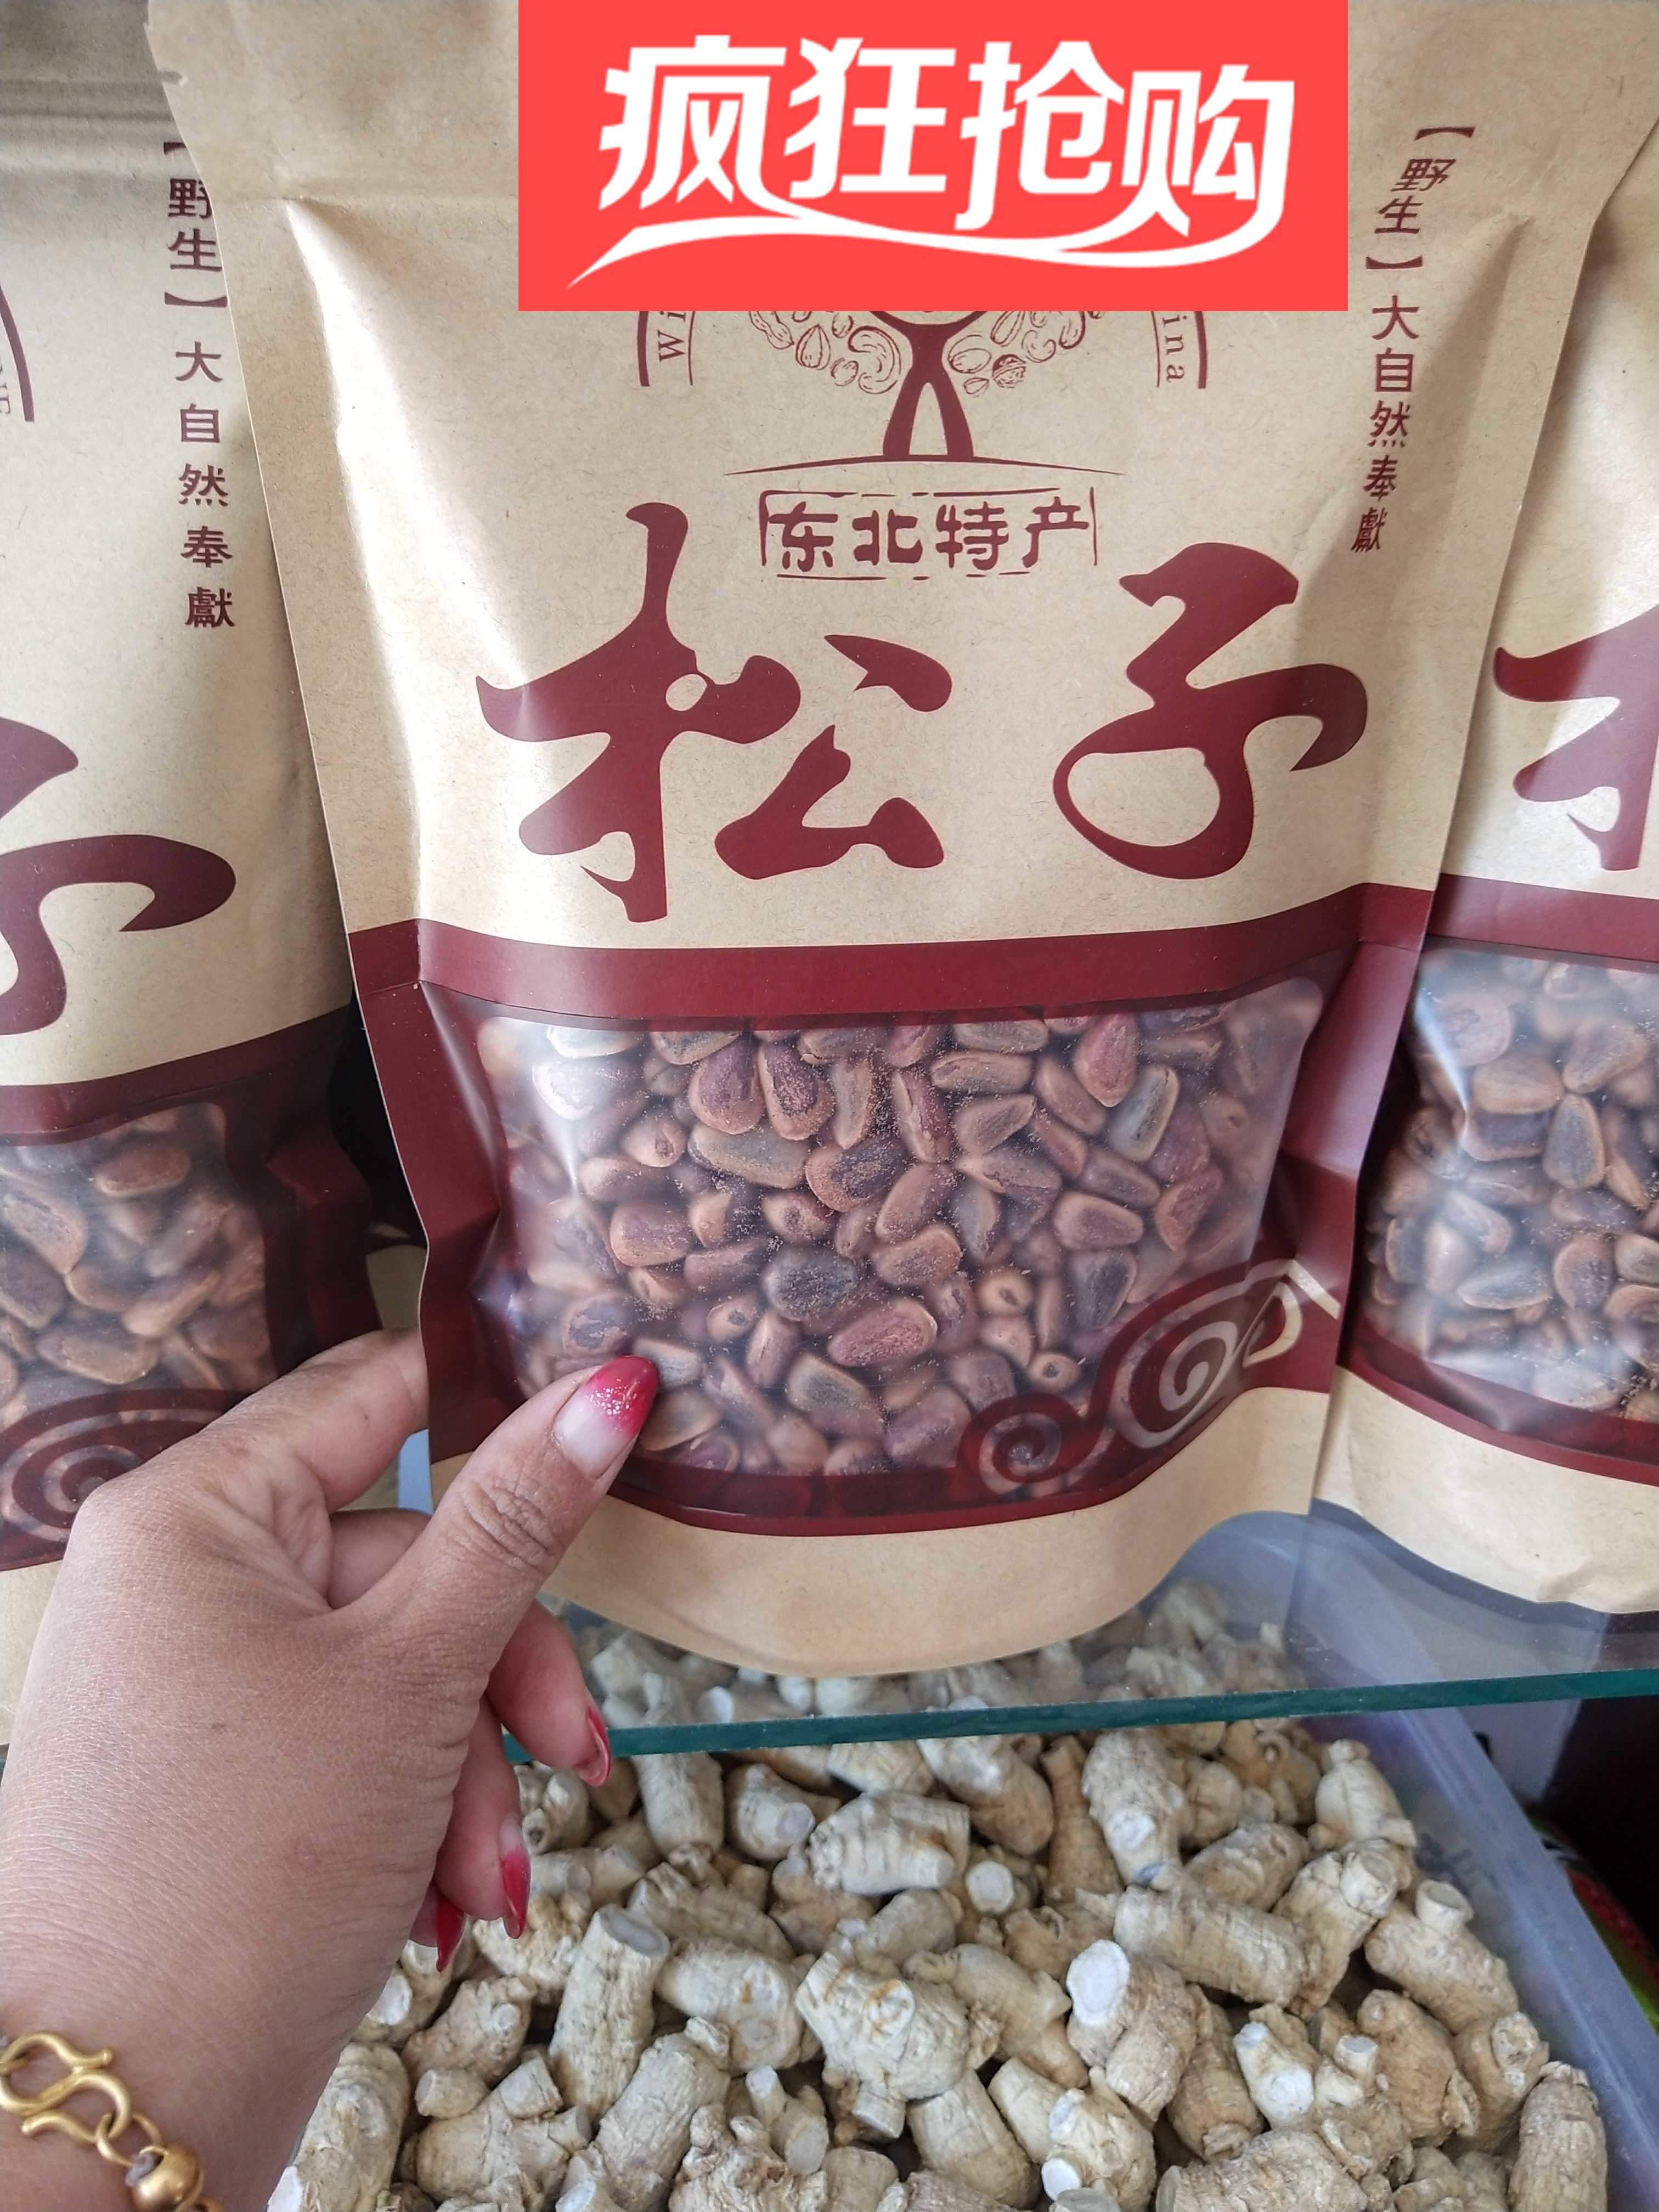 东北中国大陆坚果特产野生大粒自然炒熟炸口松子生熟可选产地直销